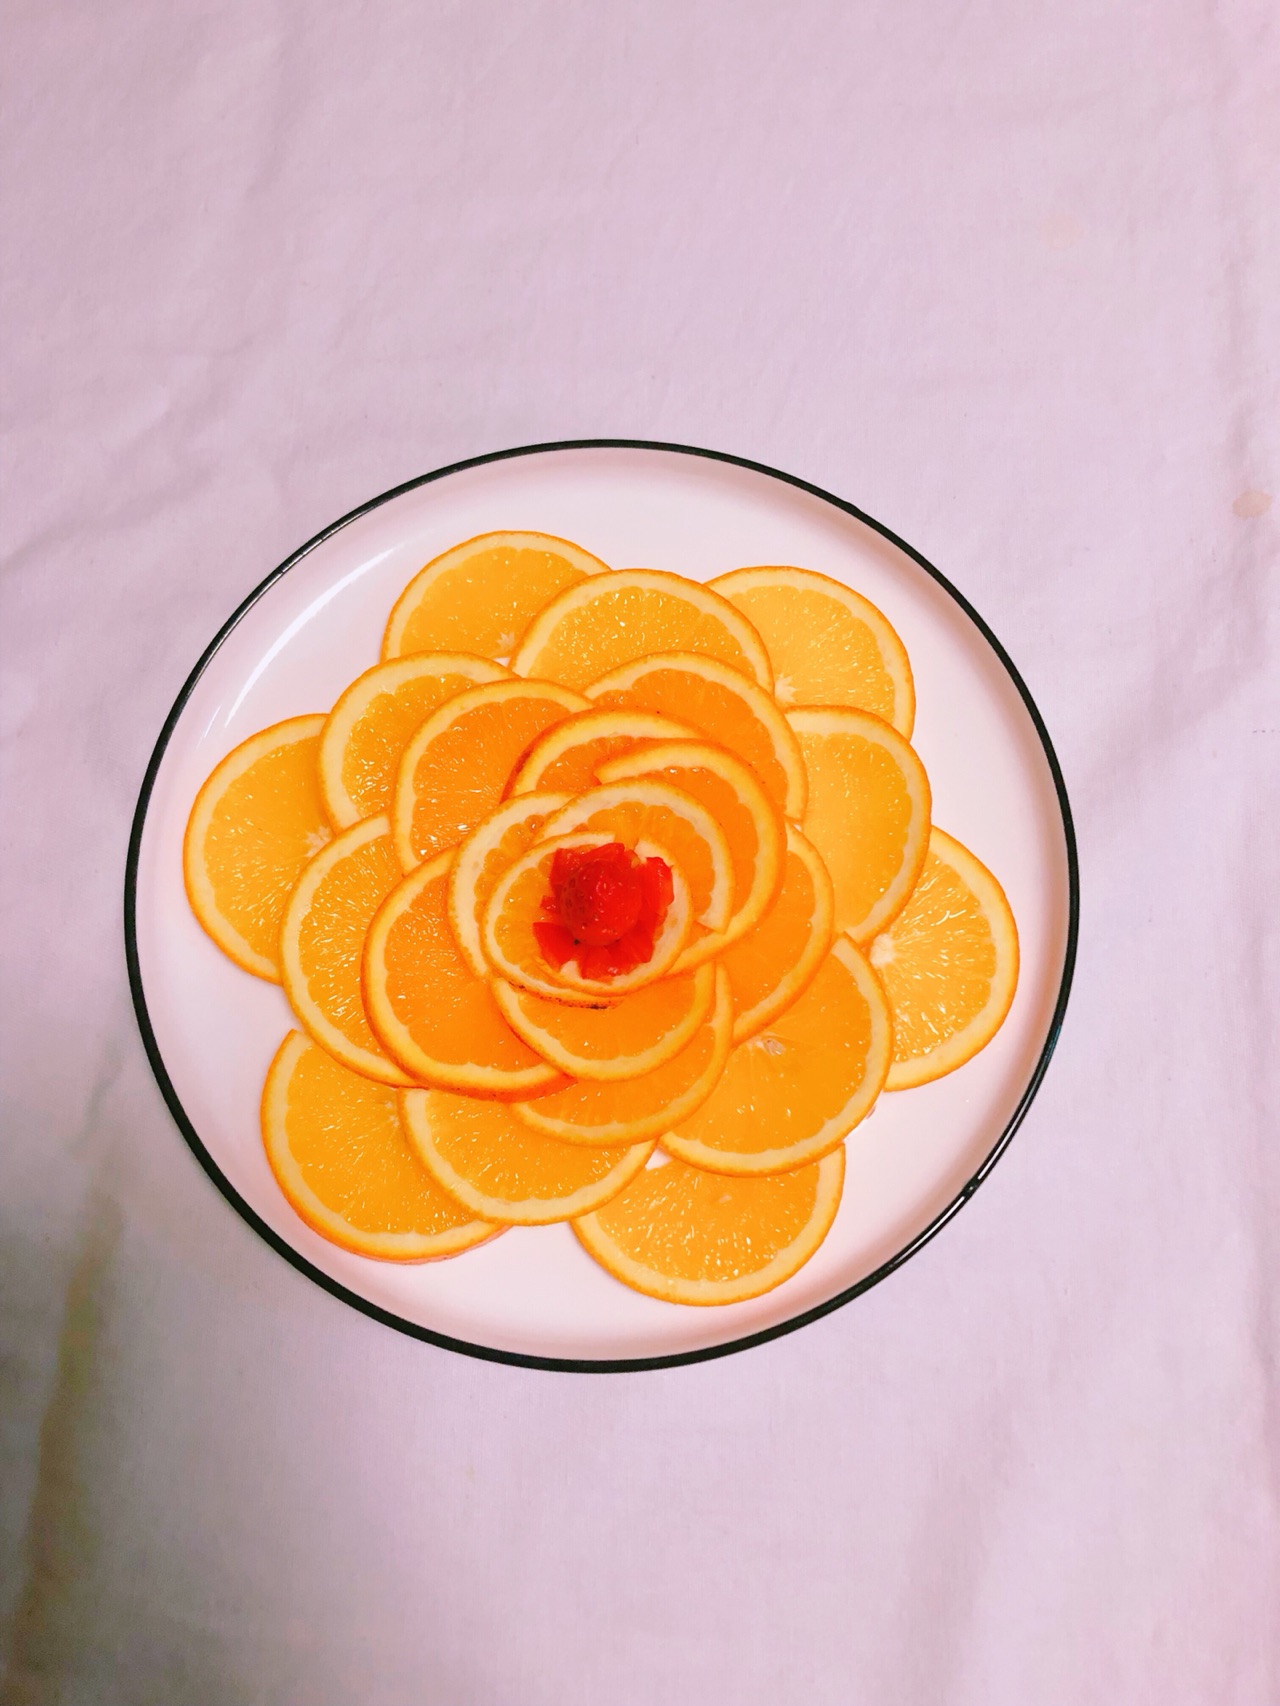 橙子的水果拼盘切法-图库-五毛网